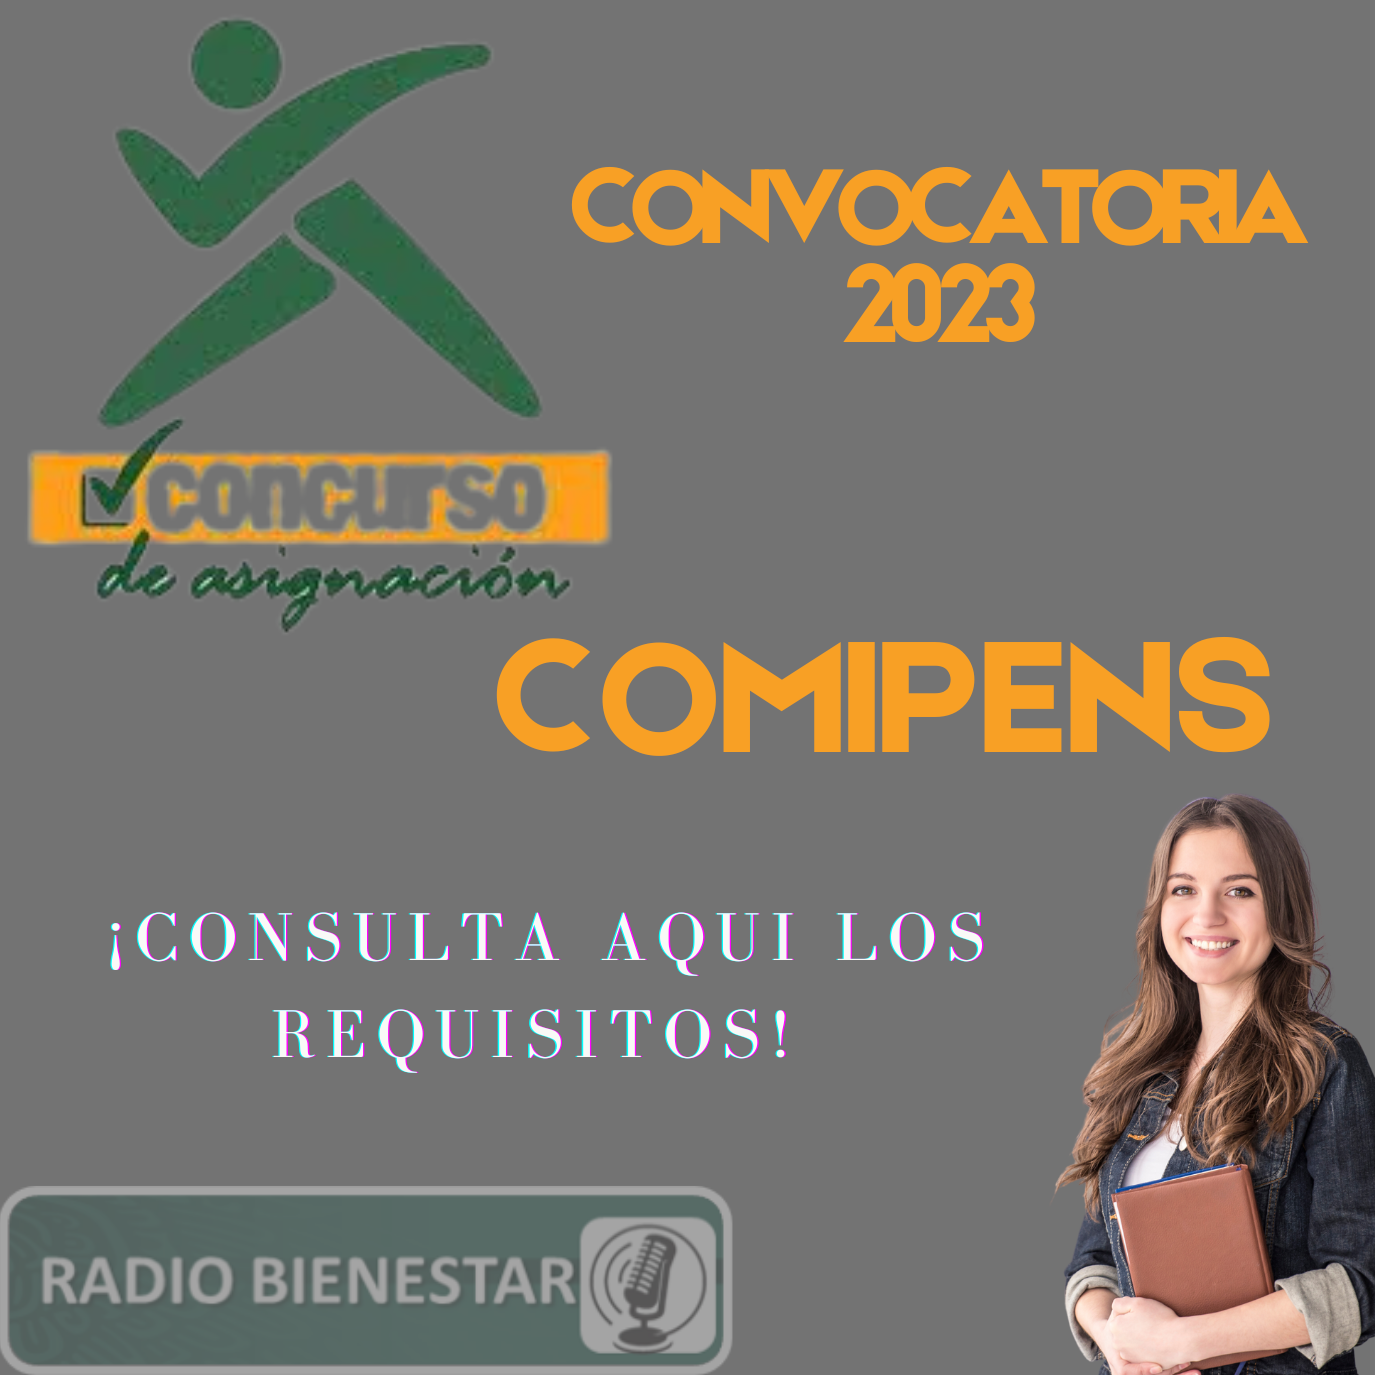 86 COMIPENS CONVOCATORIA 2023 CONSULTA AQUI LOS REQUISITOS